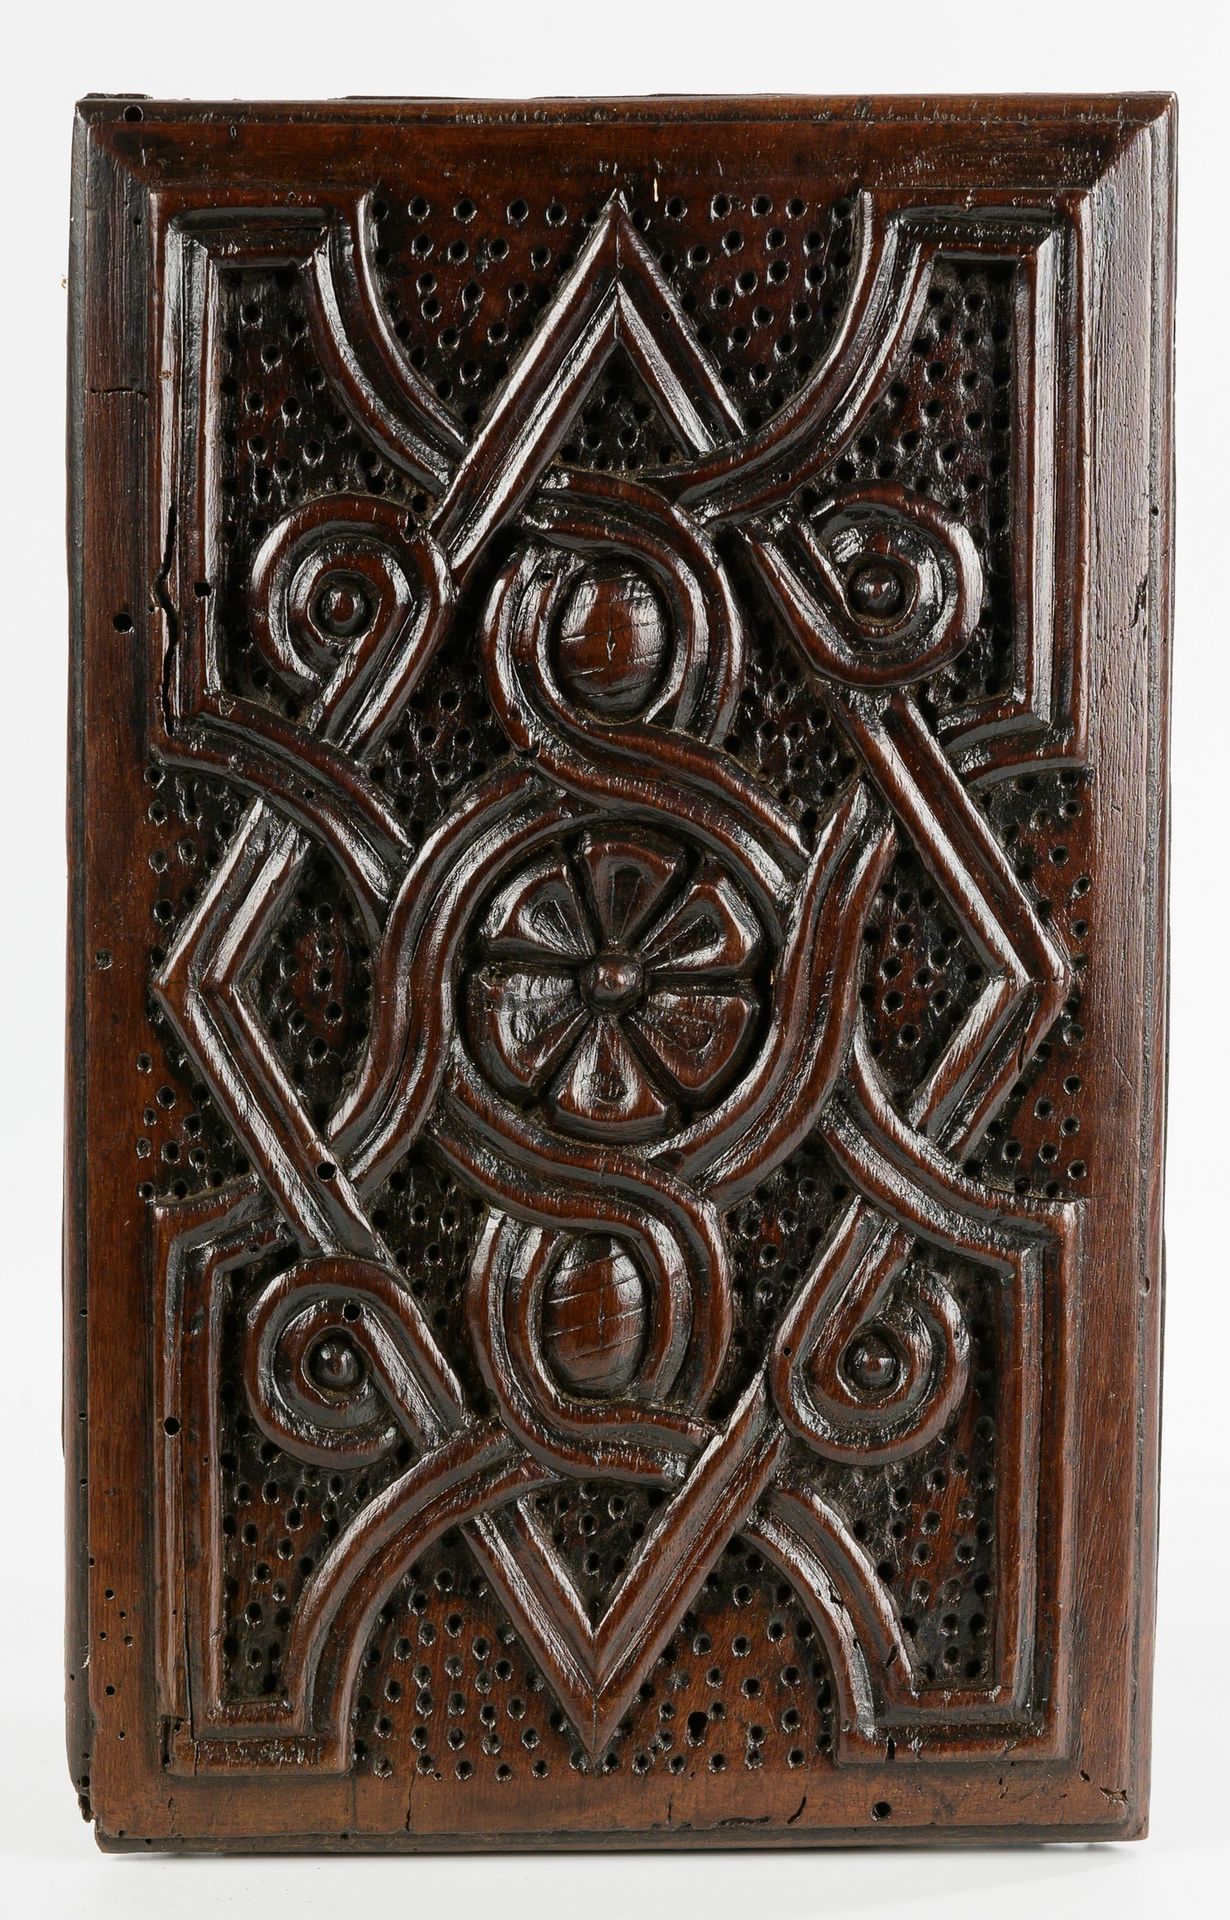 Null Paneel für die Truhe

Holz.

16. Jahrhundert

28 x 18 cm